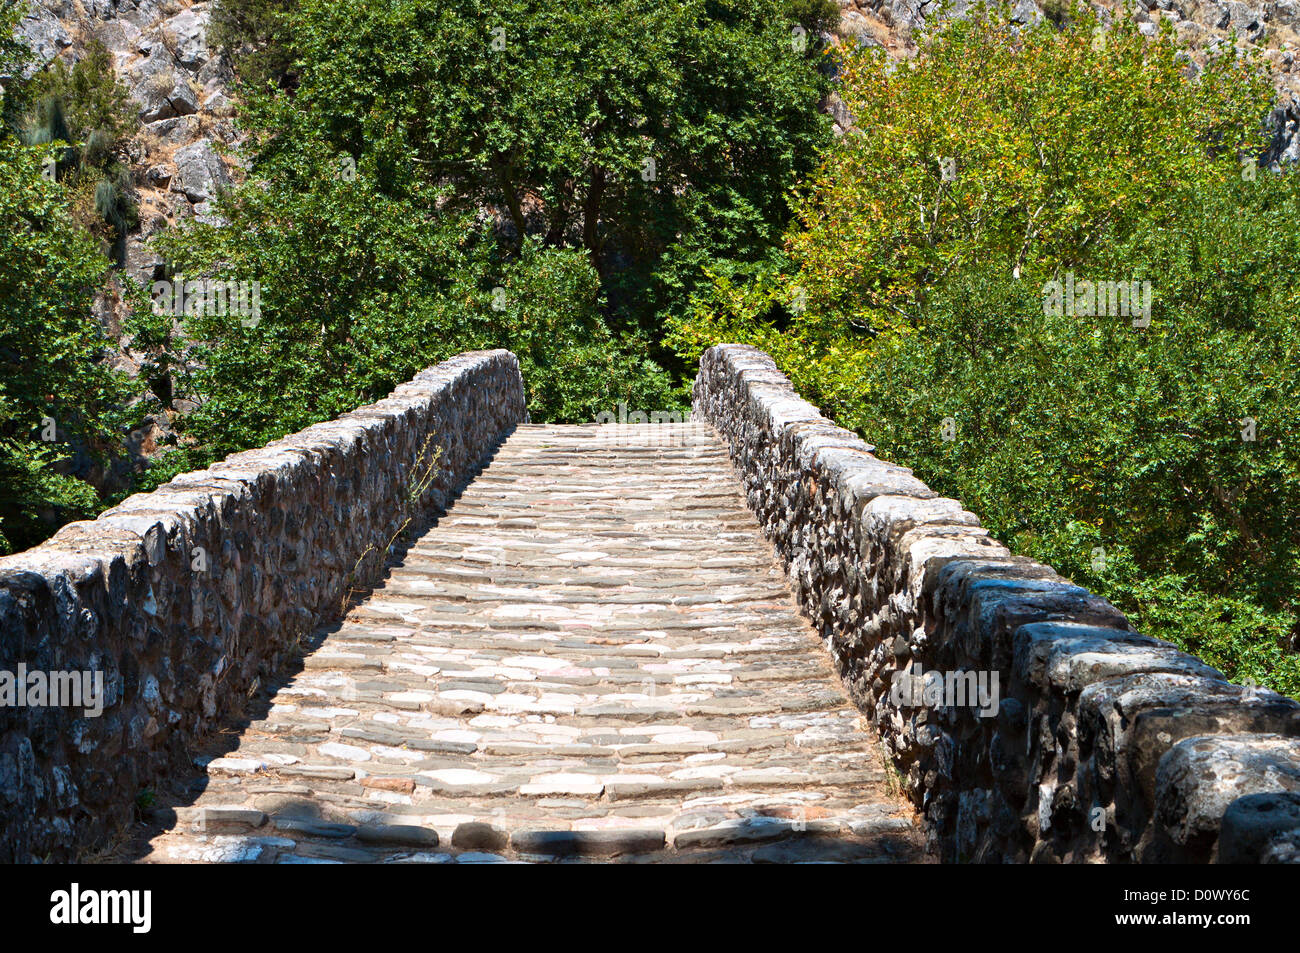 Vieux pont de pierre à l'entrée de la ville de Trikala en Grèce centrale Banque D'Images